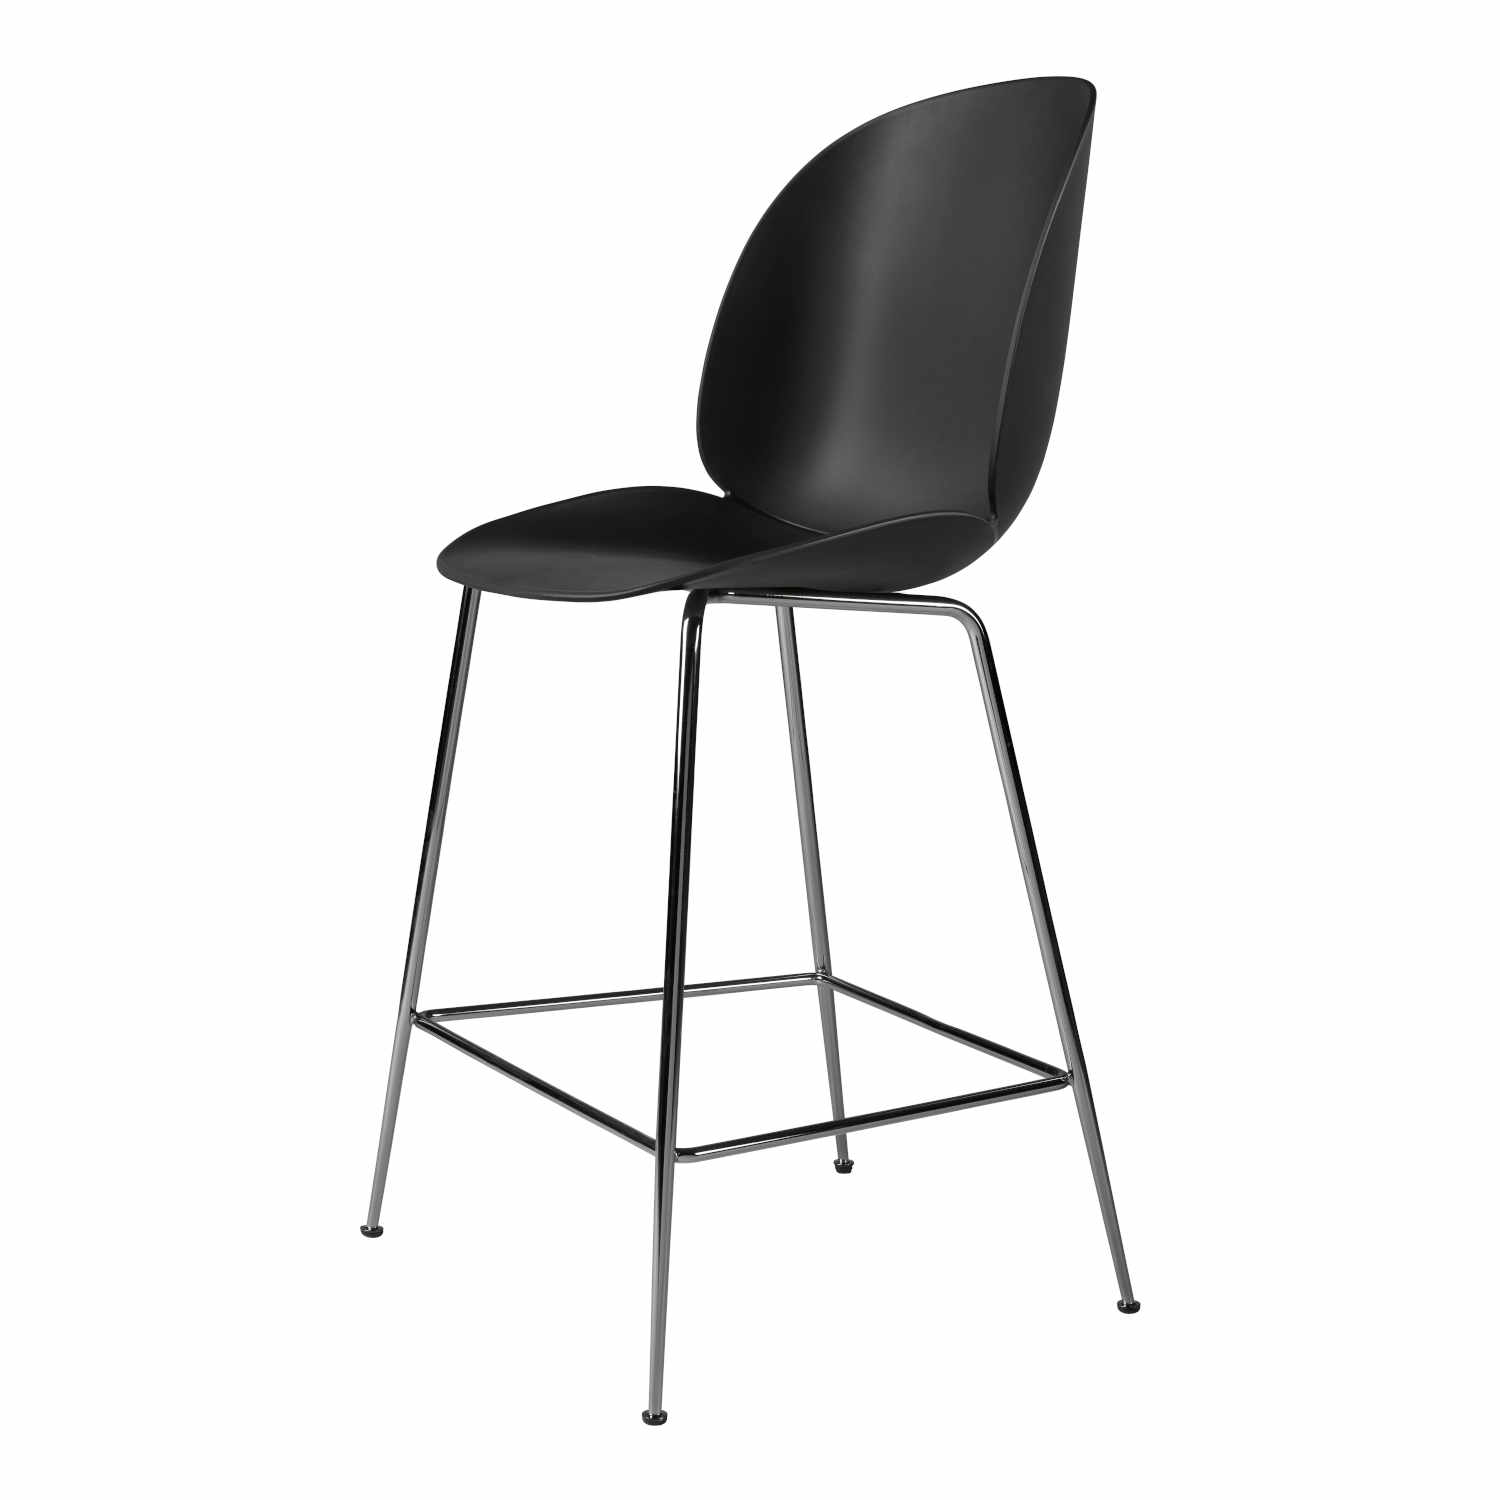 Beetle Counter Chair Conic Barhocker, Grösse sitzhöhe 73,5 cm, Sitzschale Plastic Shell new beige, Untergestell Conic Base black matt von GUBI